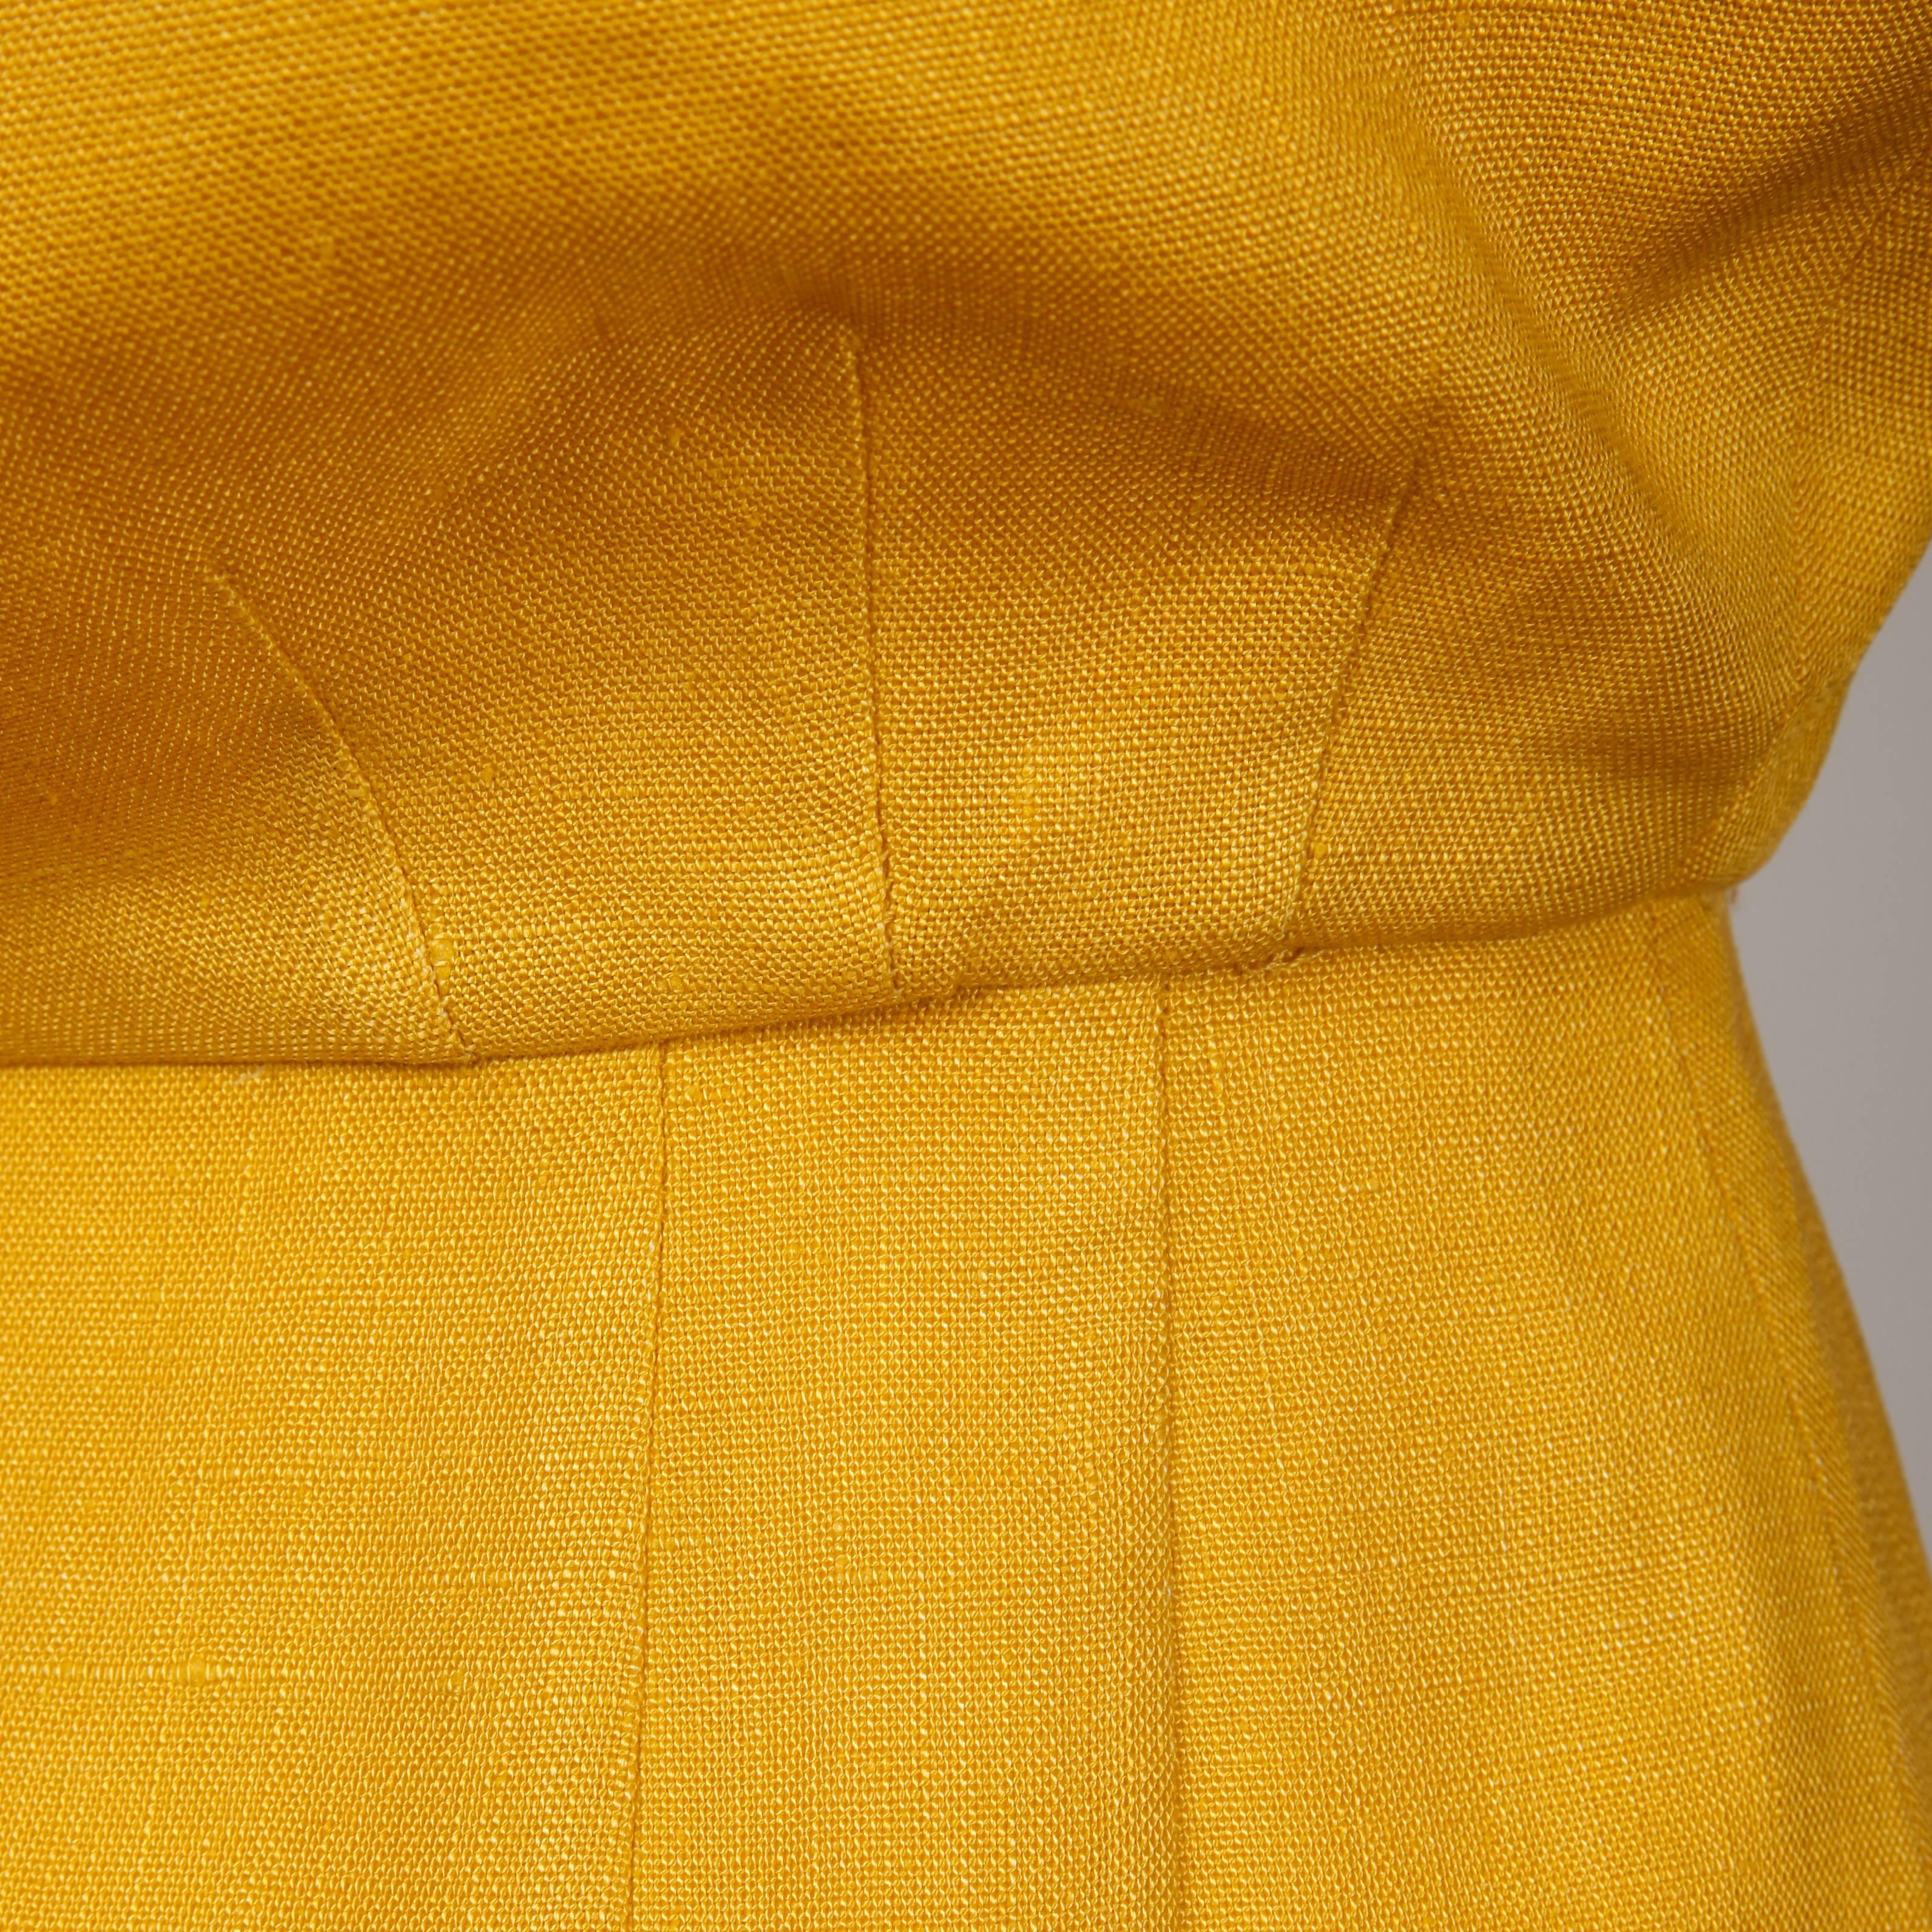 Estevez Vintage Yellow Linen Color Block Sheath Dress, 1960s  For Sale 2